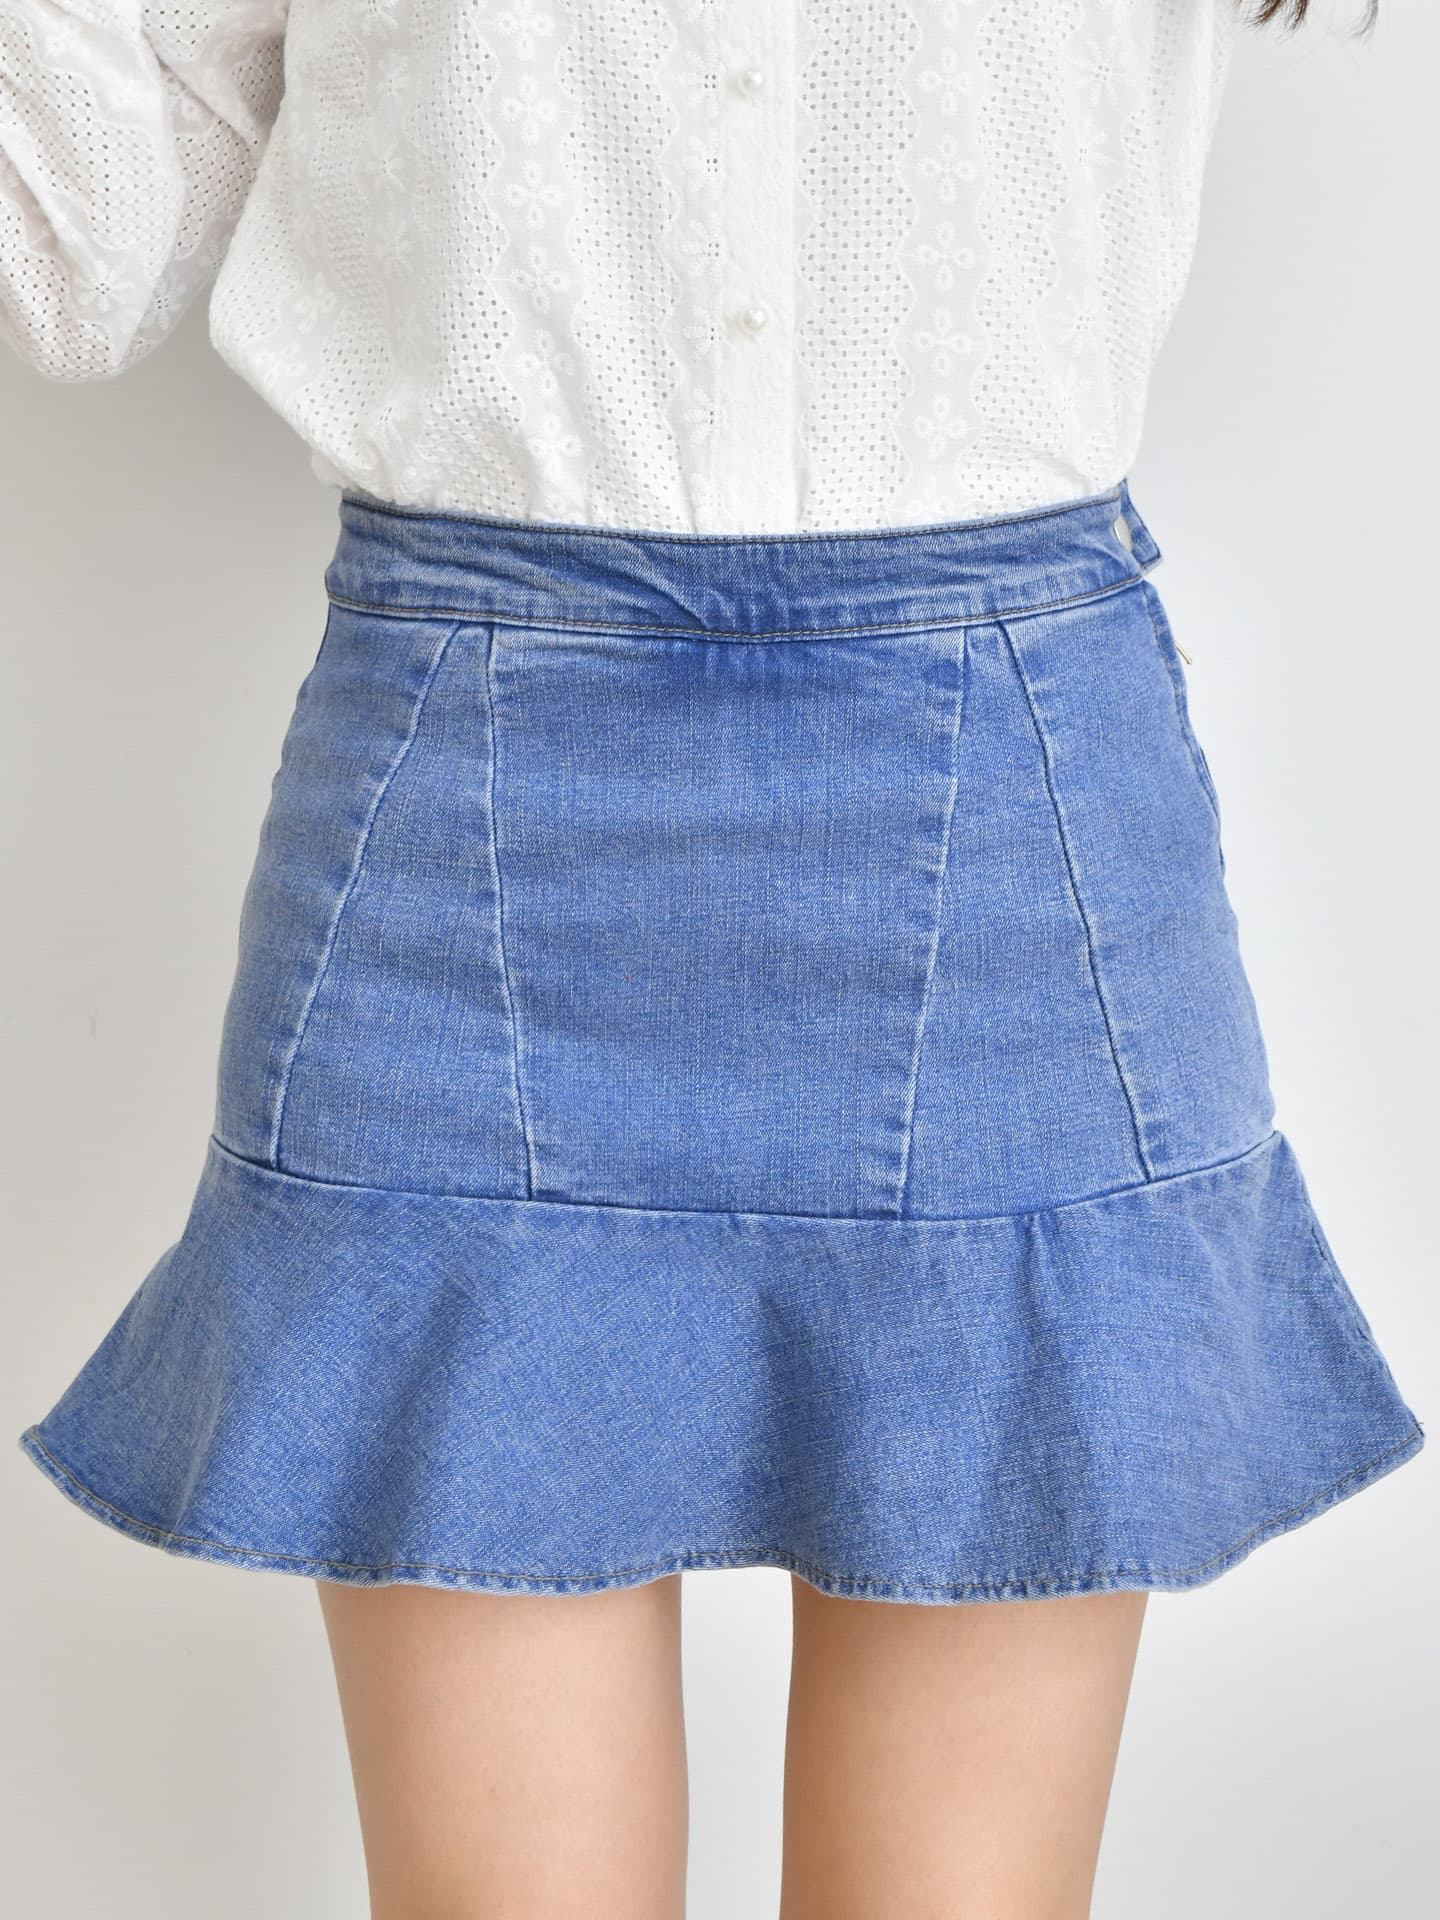 Skirt, Skort, Mini Skirt, Short Skirt | tradekorea